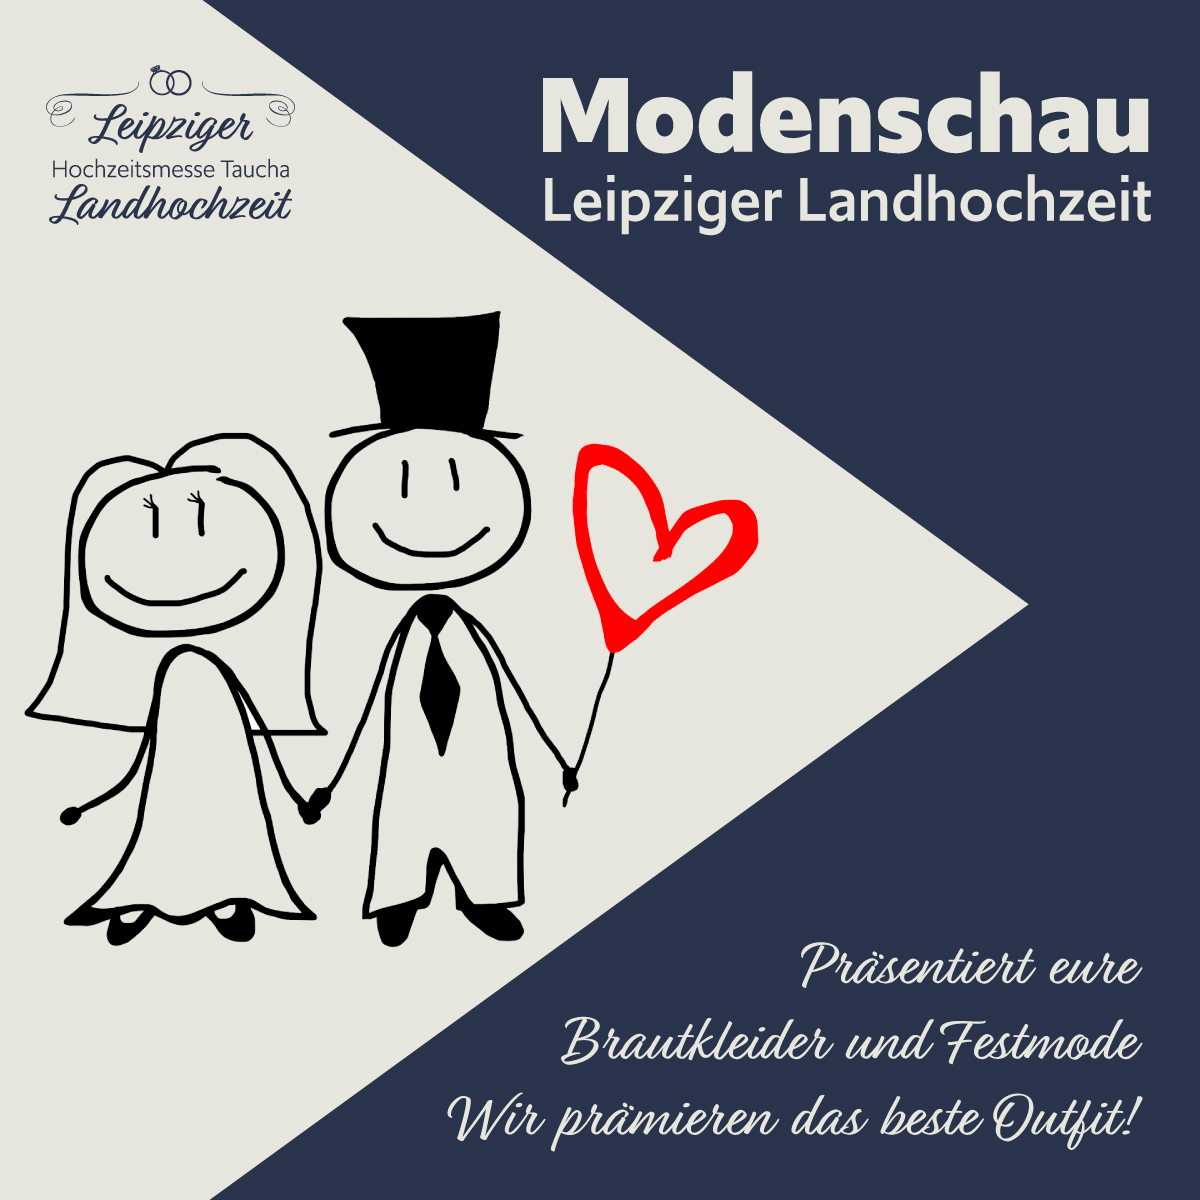 Hochzeitsmesse, Landhochzeit, Messe Leipzig, Modenschau, Brautkleid, Hochzeitsanzug